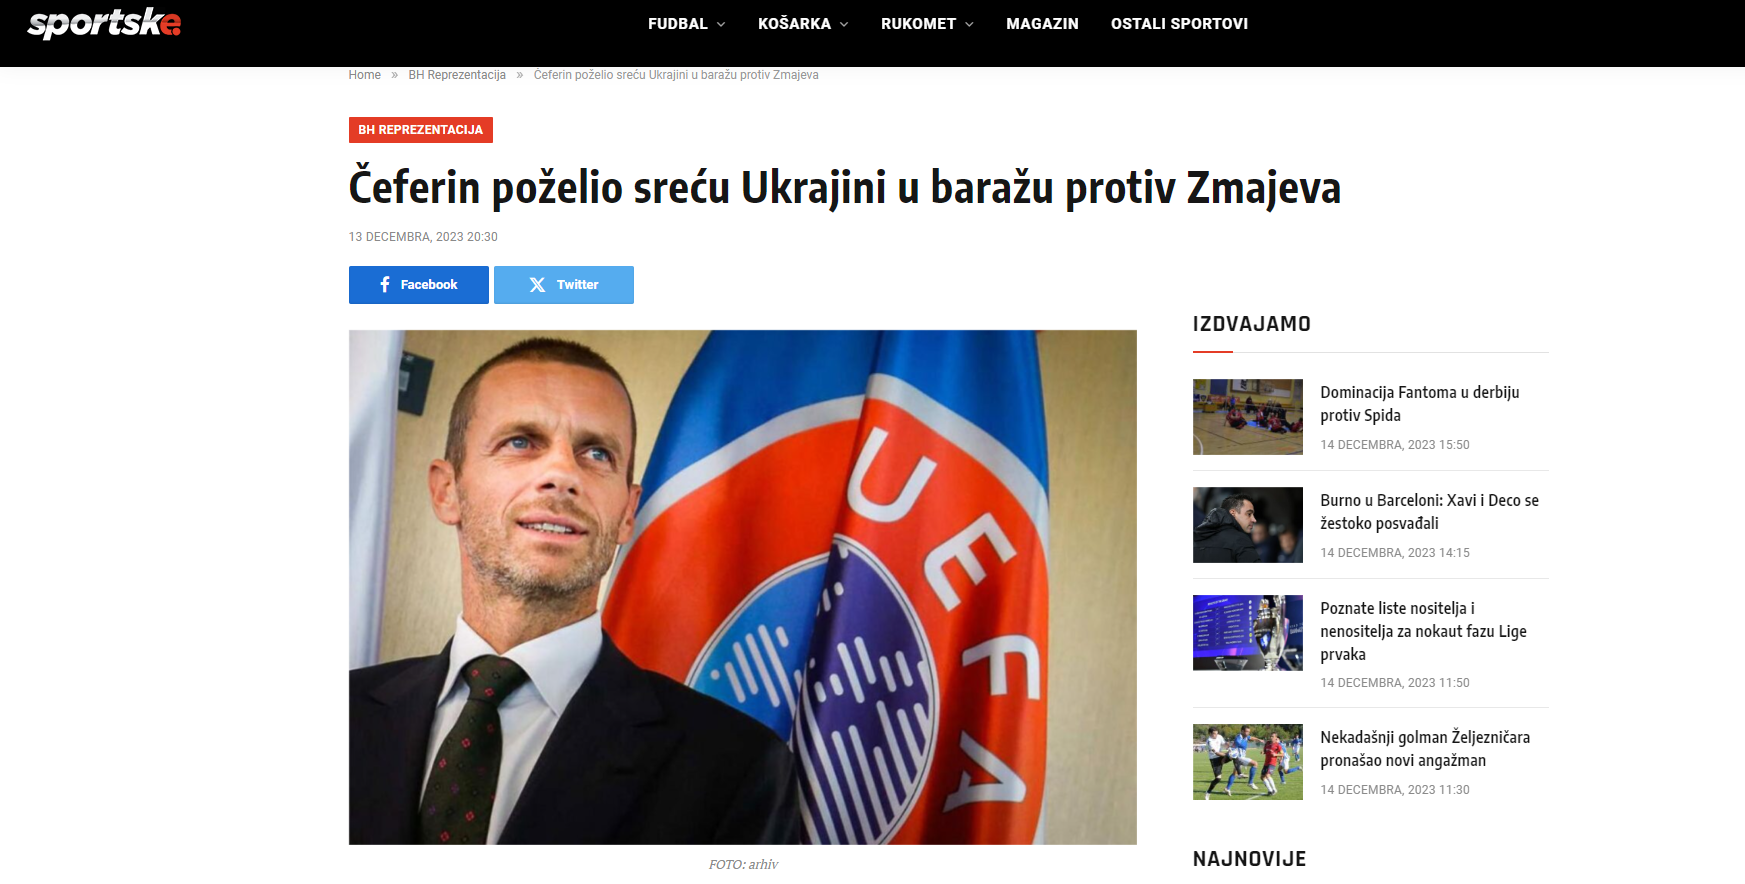 Bośnia twierdzi, że Čeferin próbował pogodzić się z Ukrainą